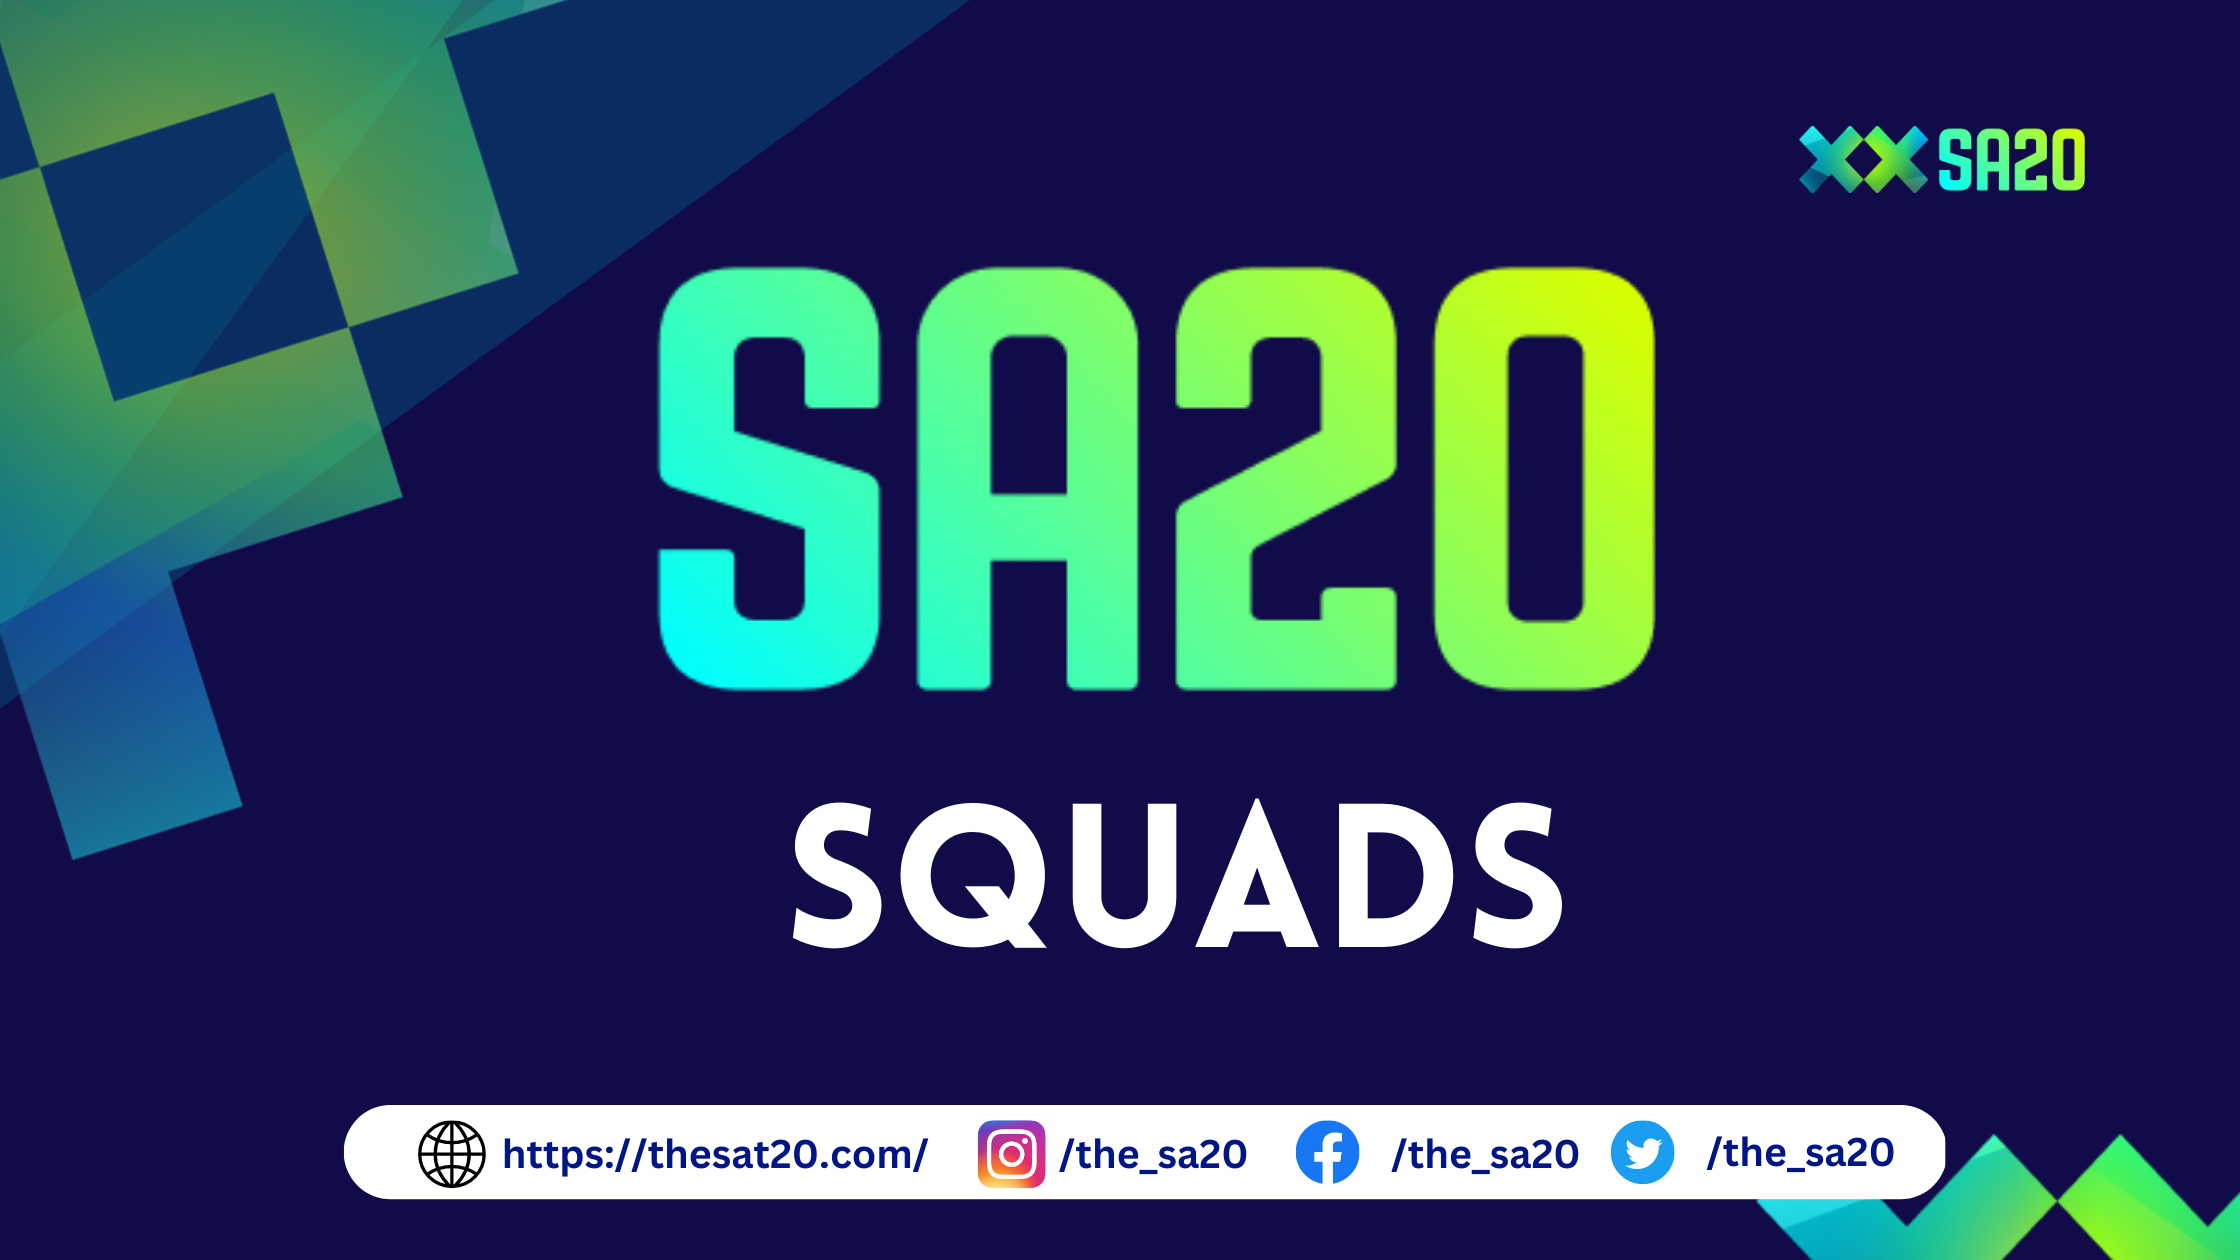 sa20 squads